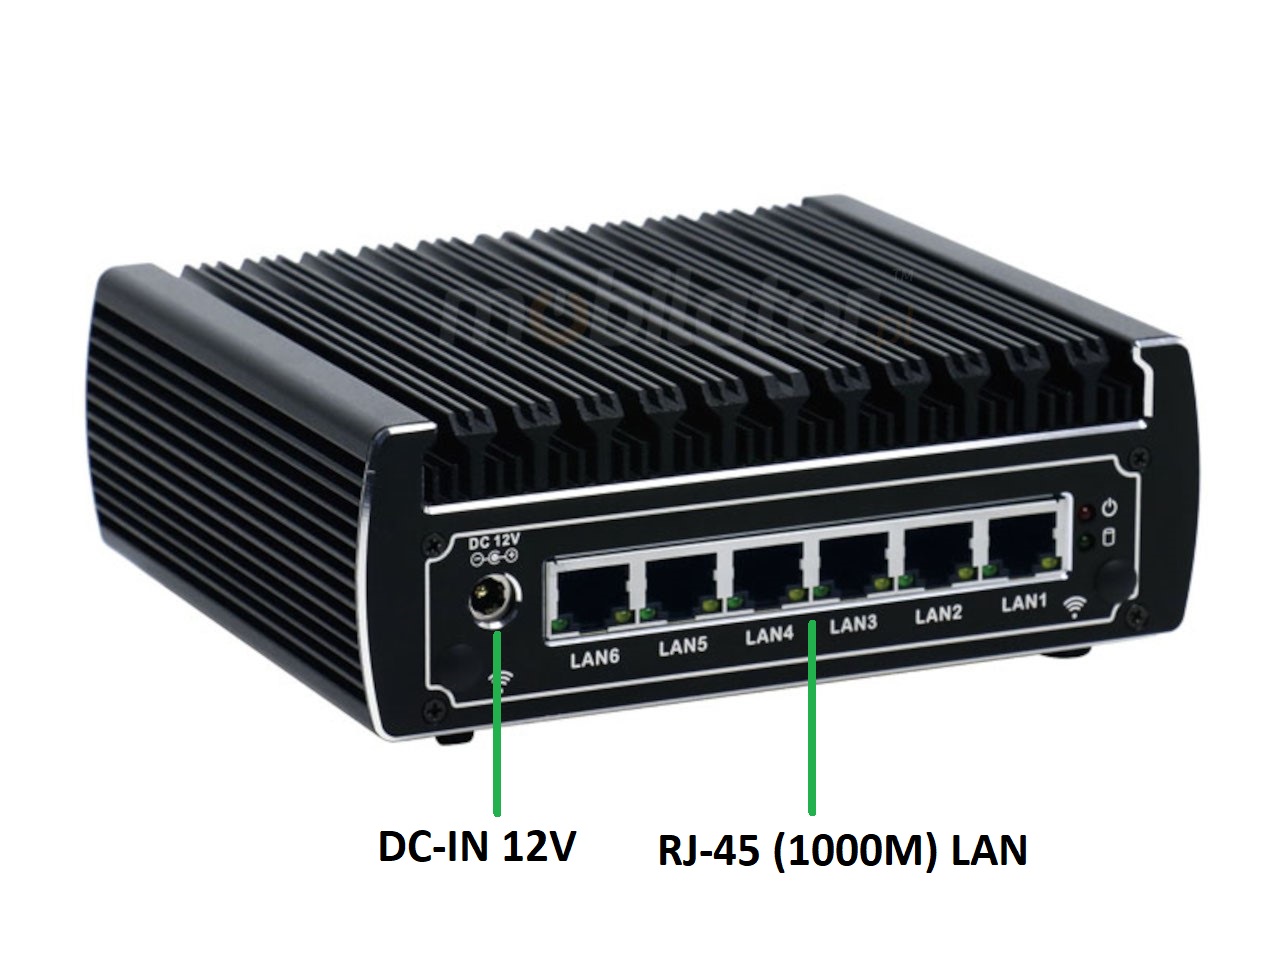   IBOX N133 v.9, zcza ty, HDD, DDR4 WIFI BLUETOOTH, przemysowy, may, szybki, niezawodny, fanless, industrial, small, LAN, INTEL i3